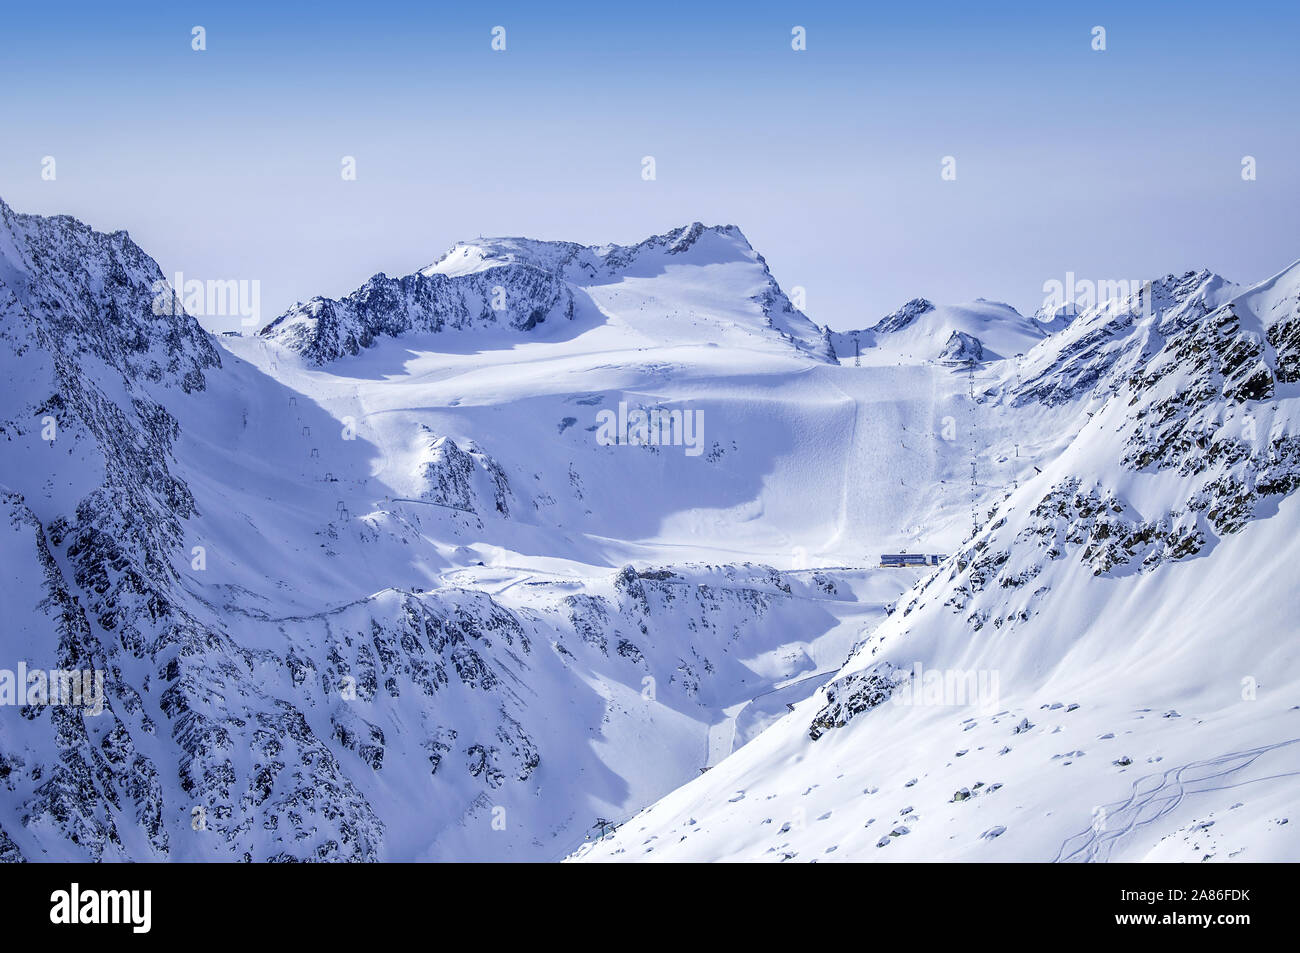 Impianti di risalita, piste e piste sul ghiacciaio Rettenbach in Solden località sciistica nelle Alpi Otztal in Tirol, Austria. Il luogo della prima Coppa del Mondo di slalom gigante Foto Stock